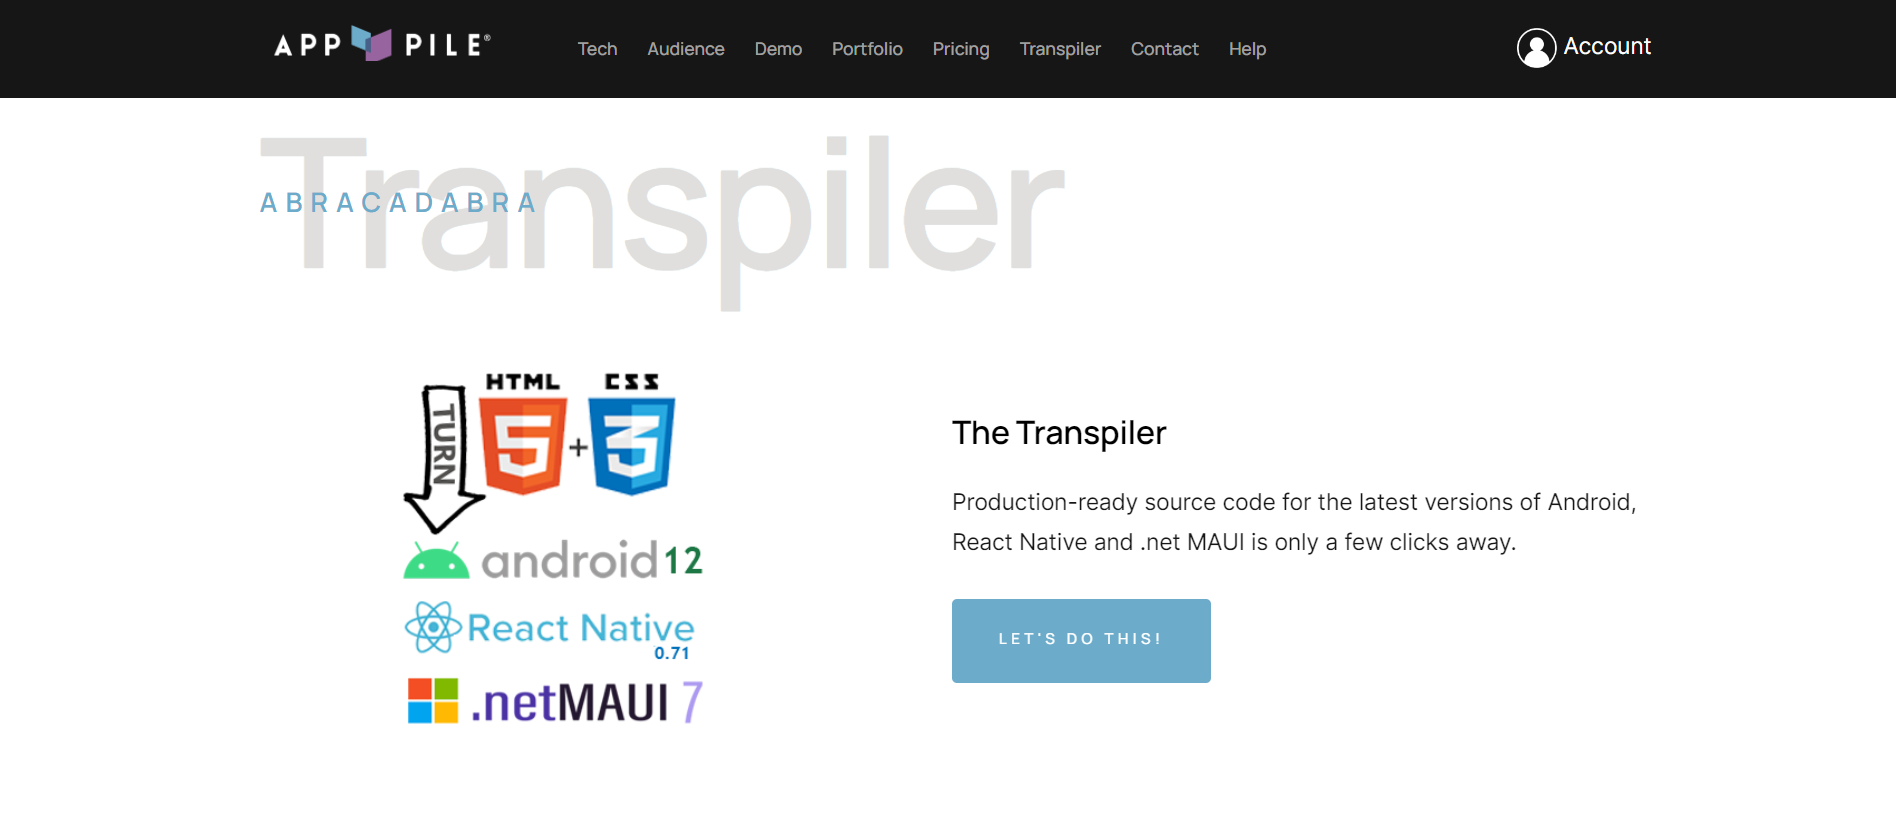 The Transpiler